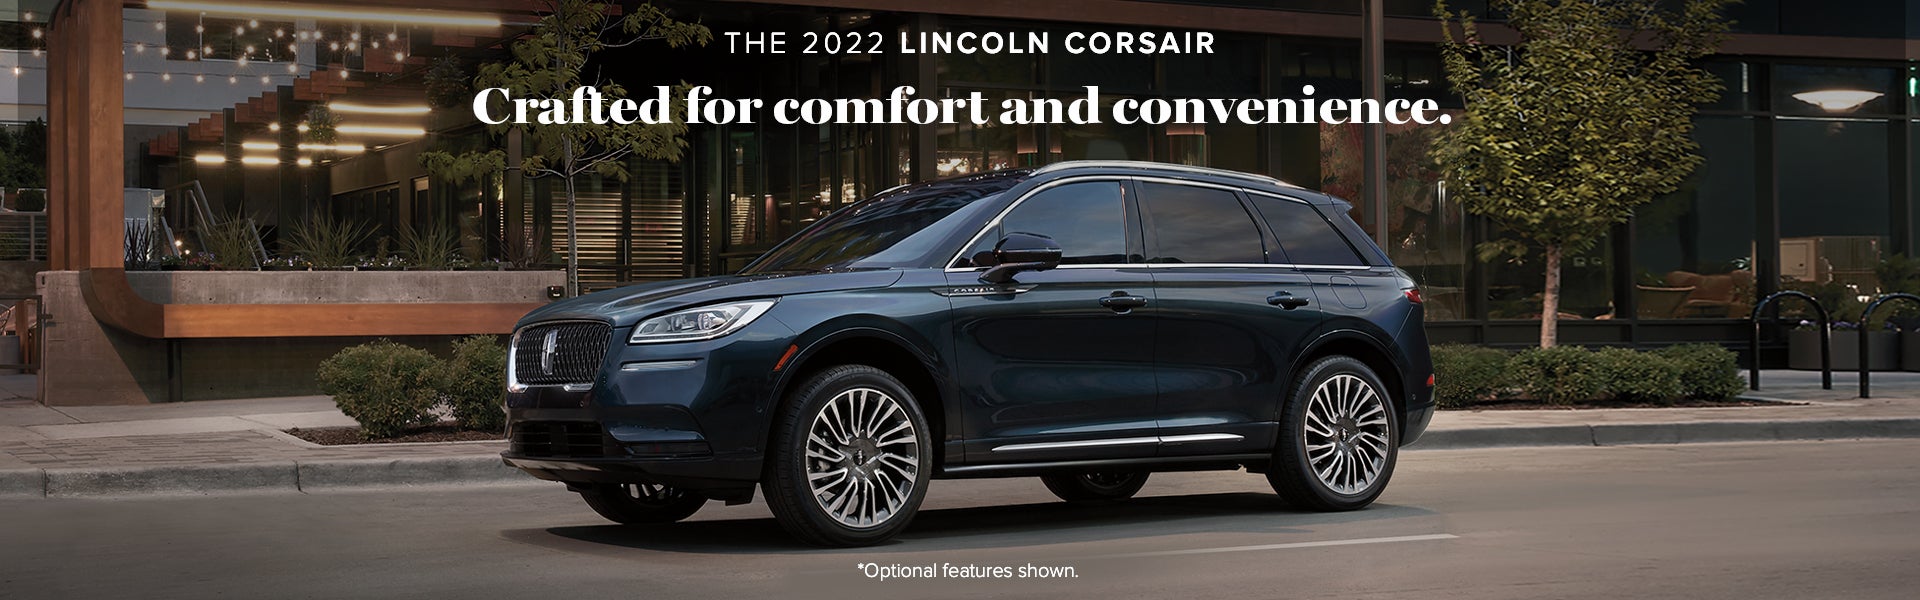 2022 Lincoln Corsair